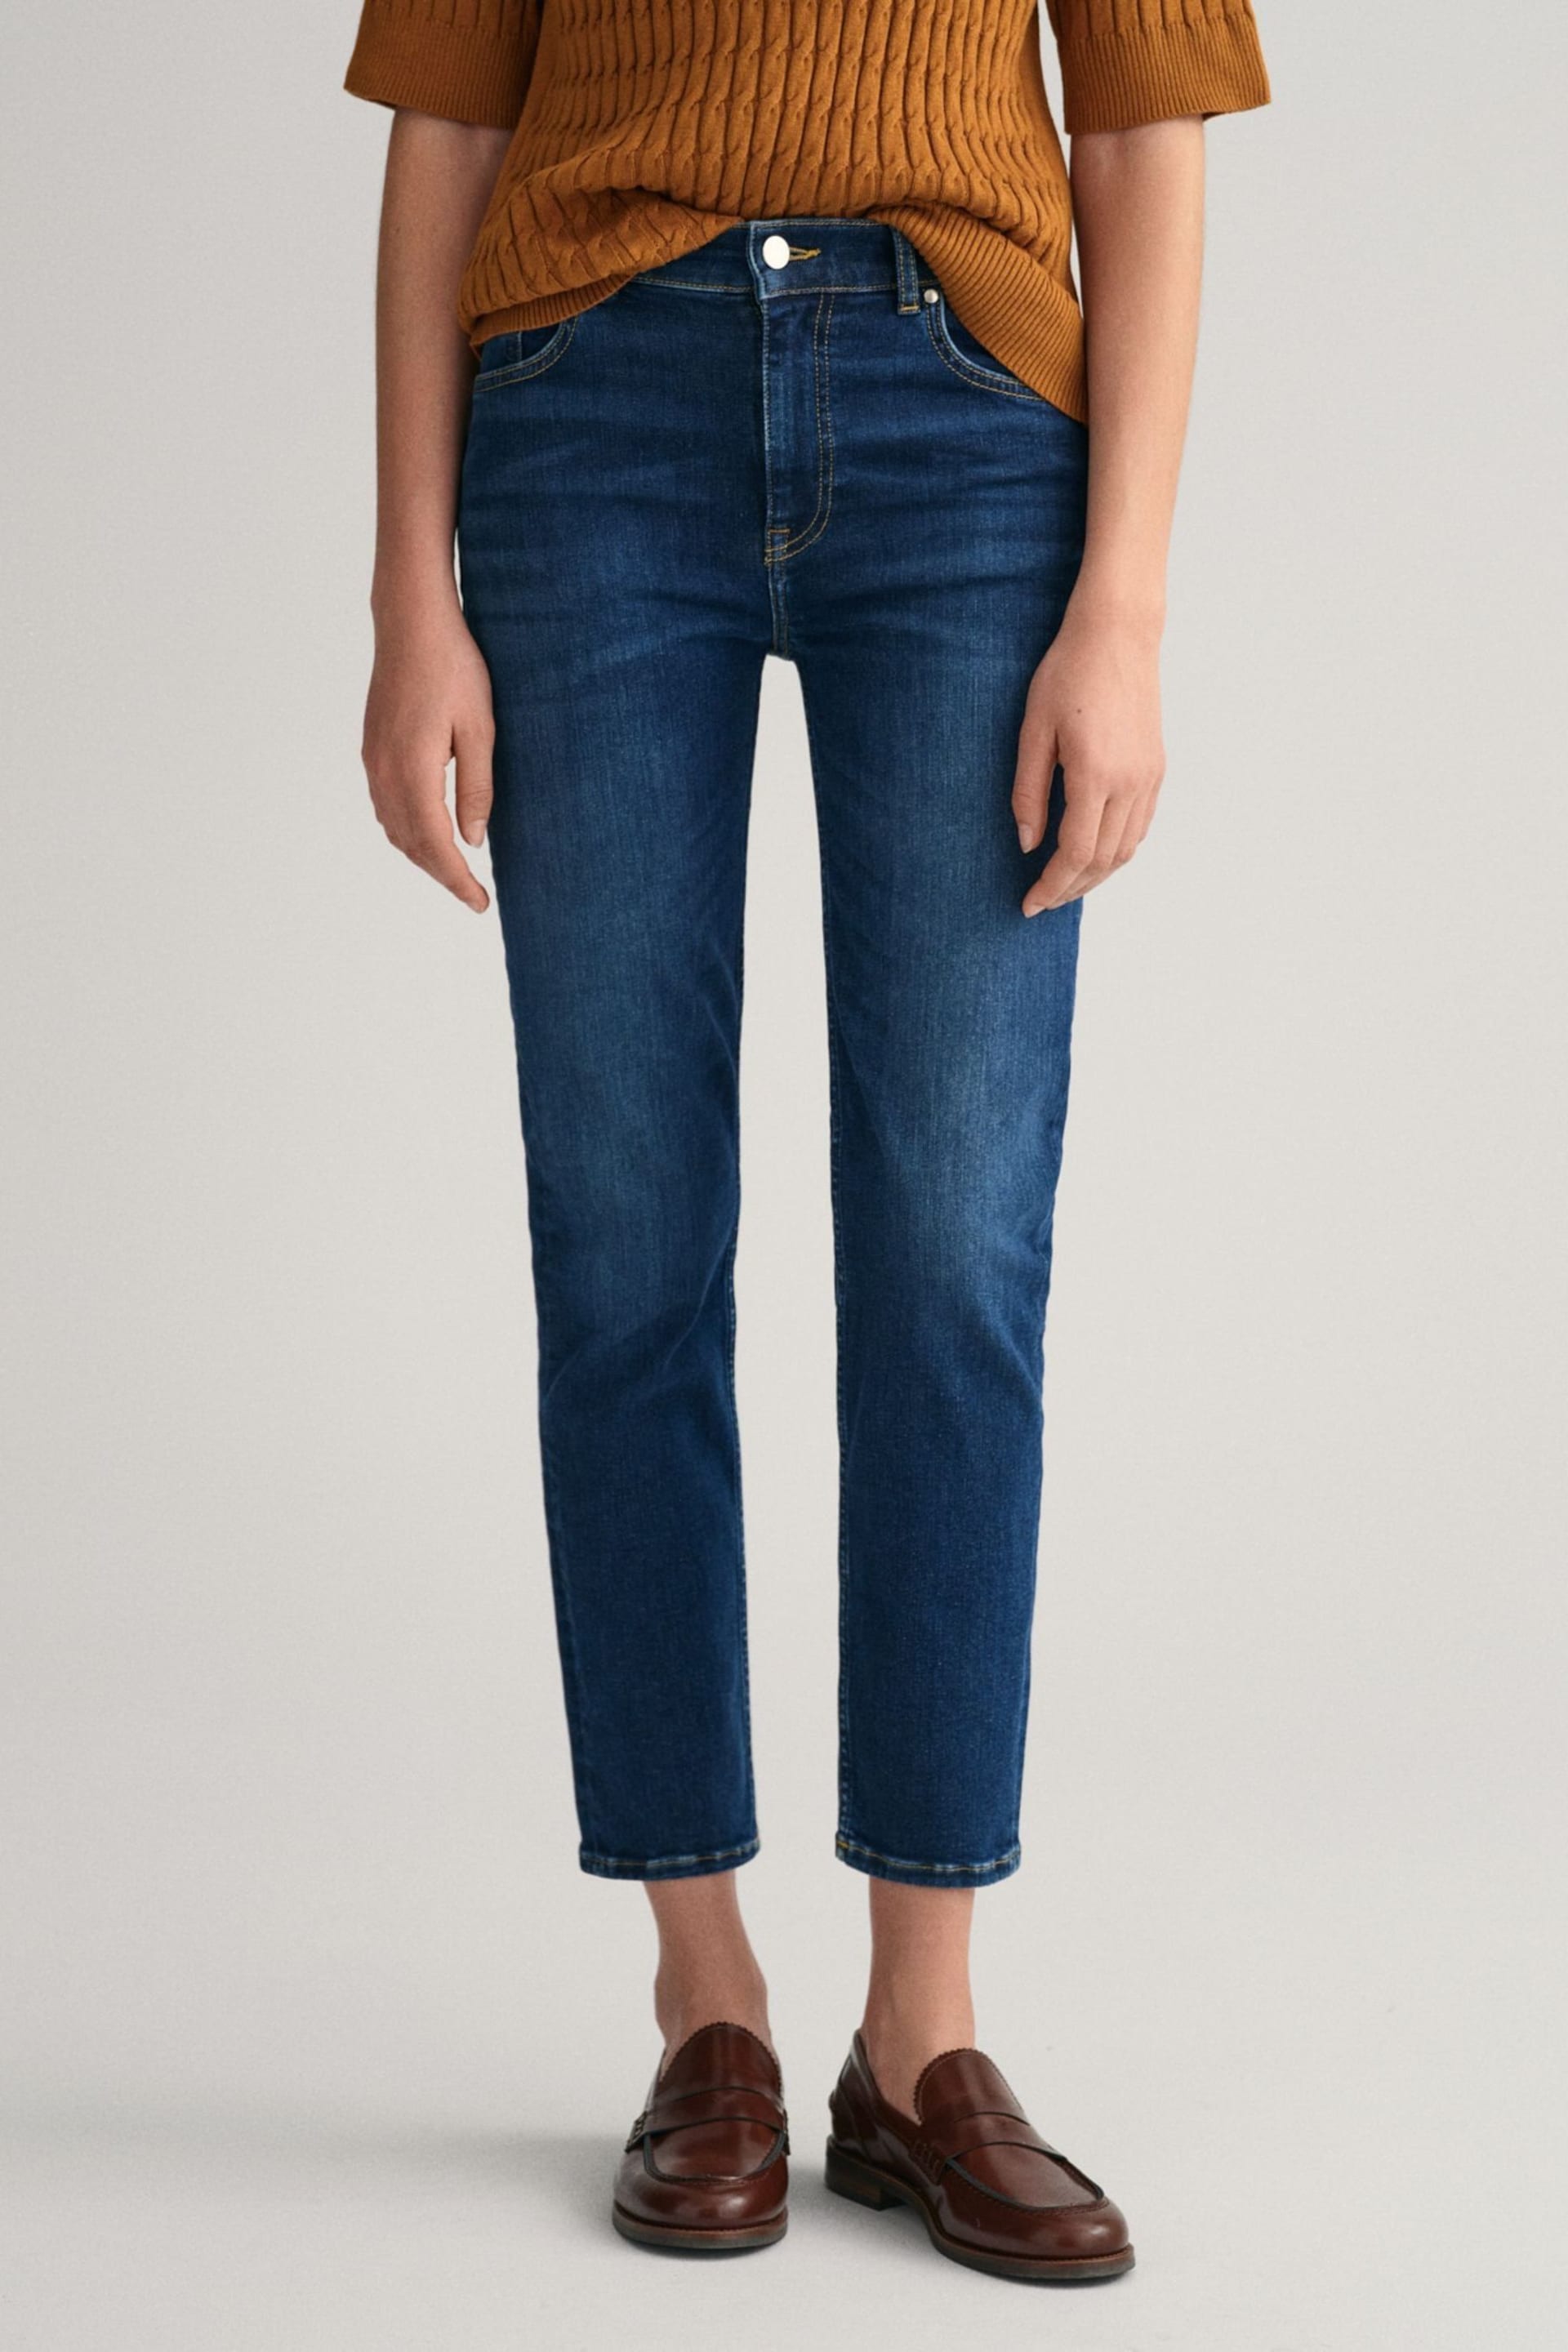 GANT Blue Slim Fit Ankle Length Jeans - Image 3 of 6